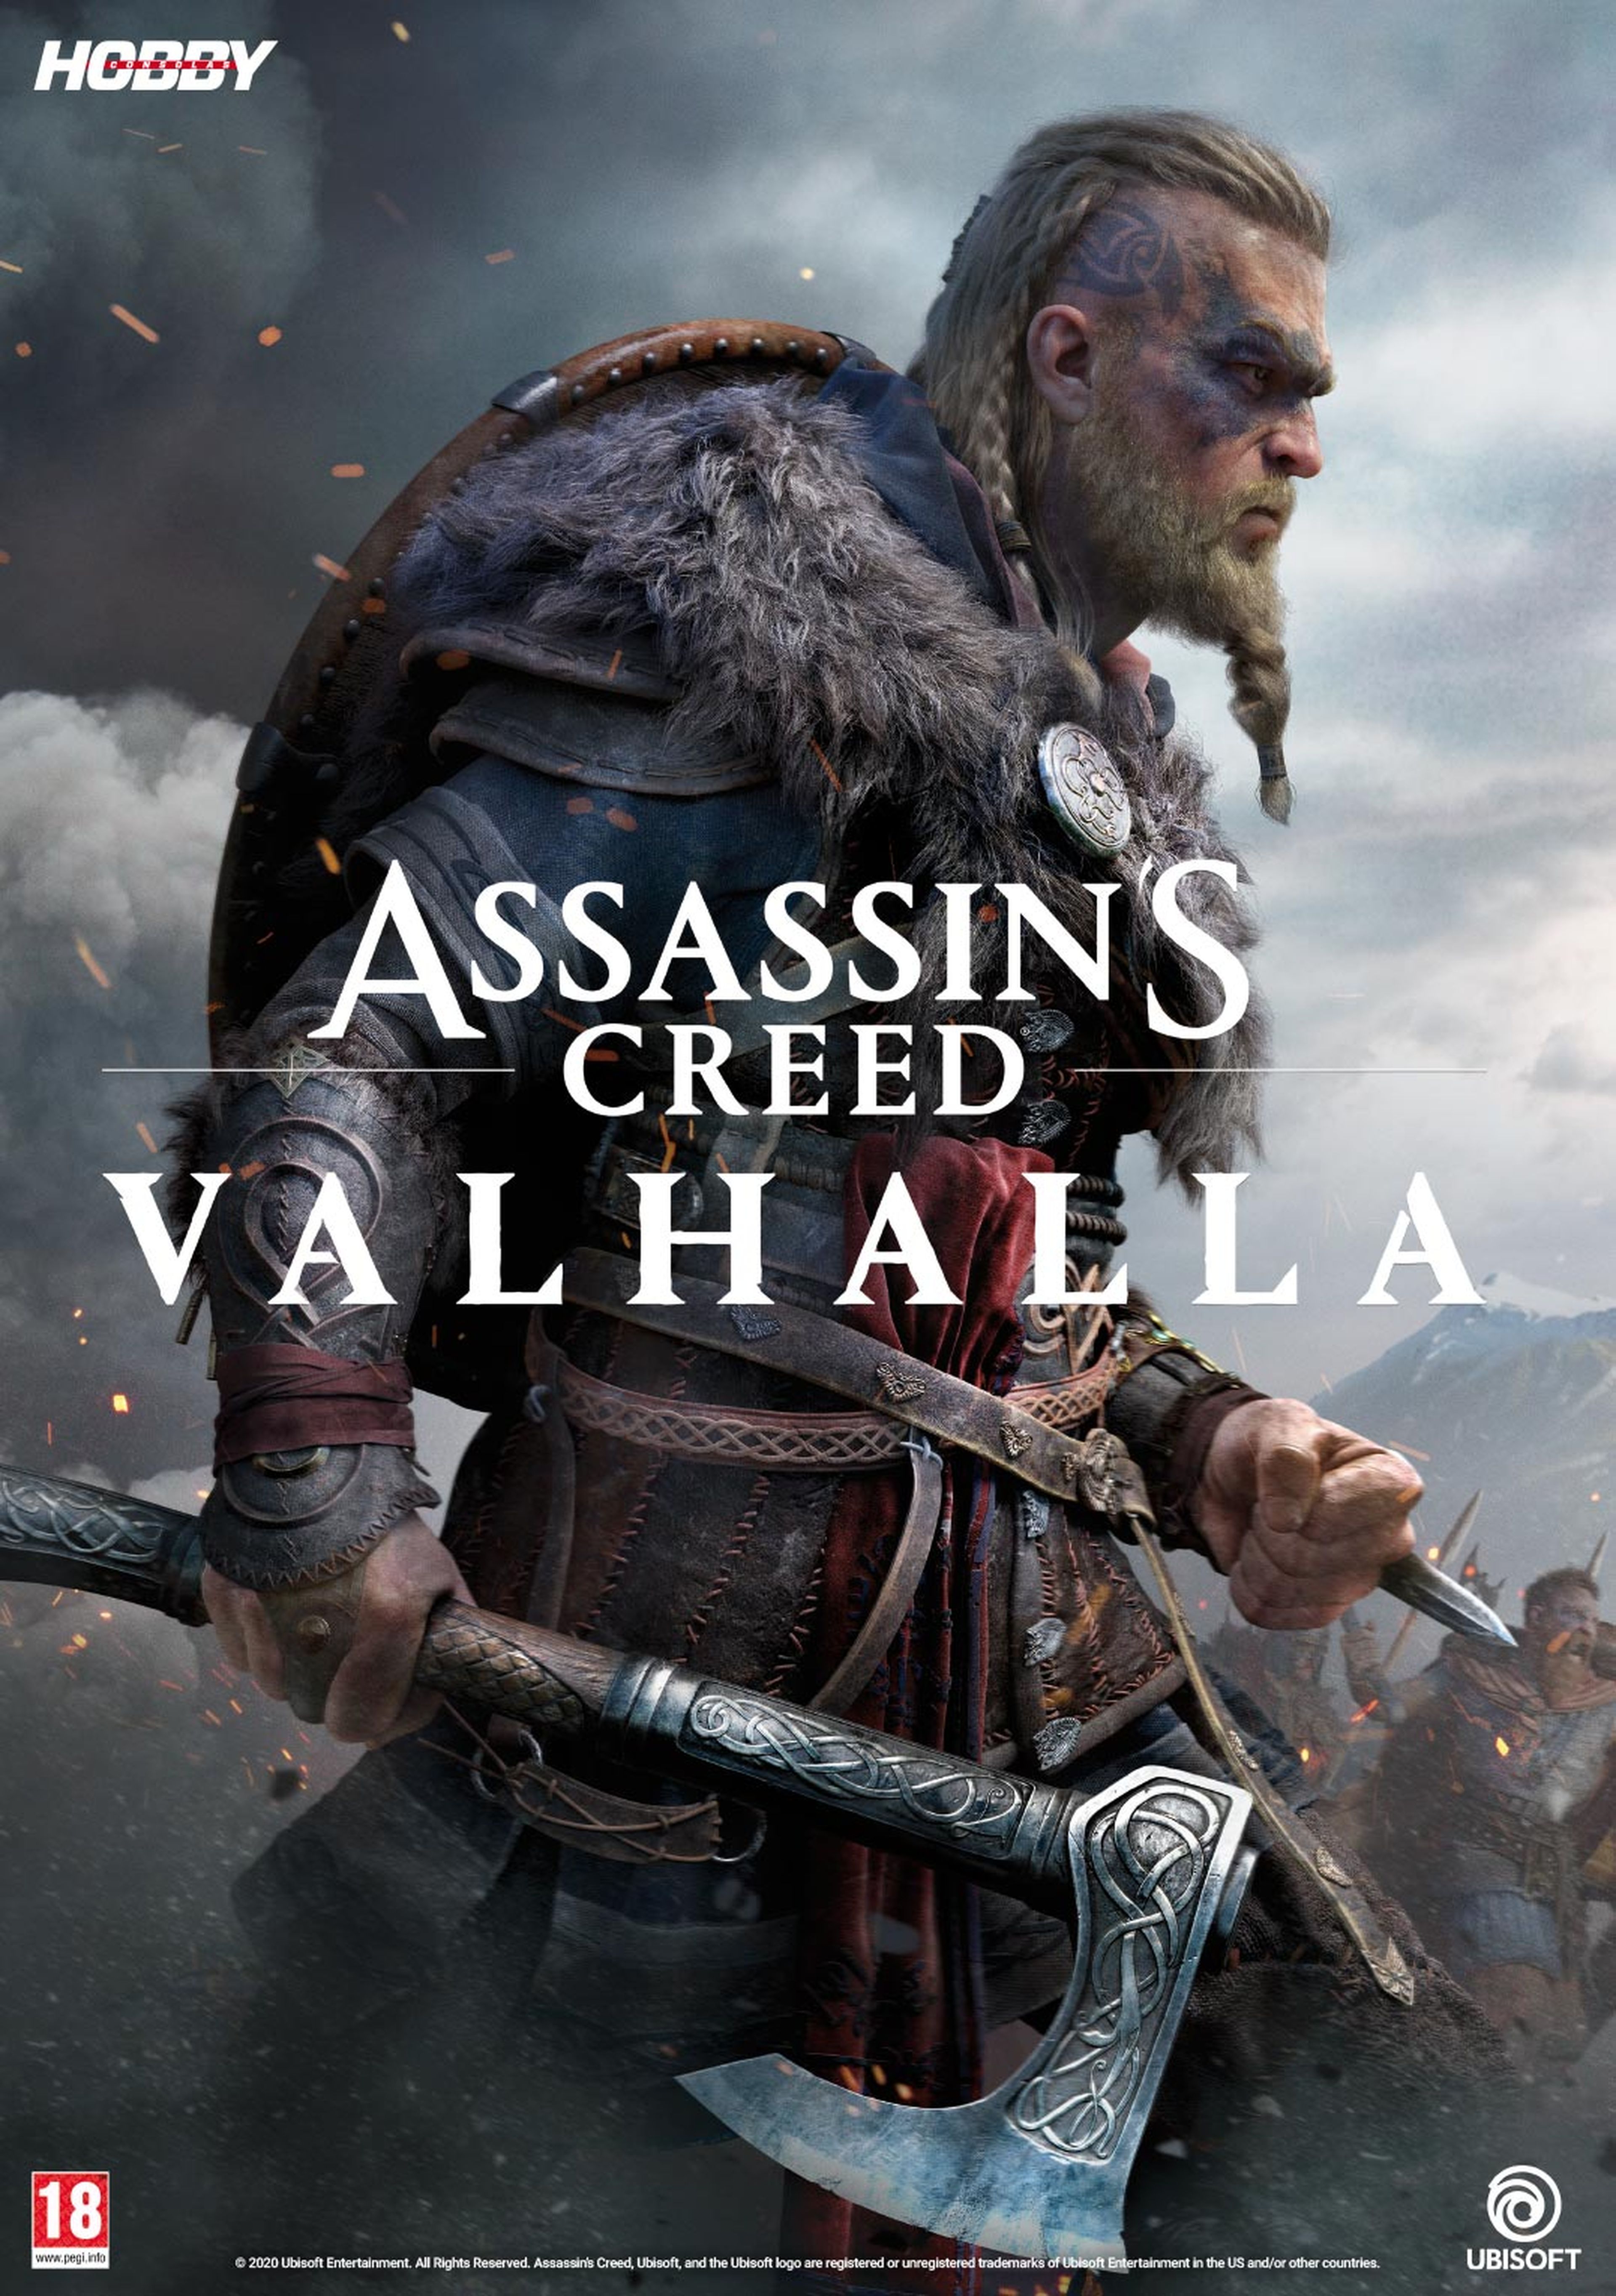 Hobby Consolas 347, a la venta con pósters de Streets of Rage 4 y Assassin's Creed Valhalla